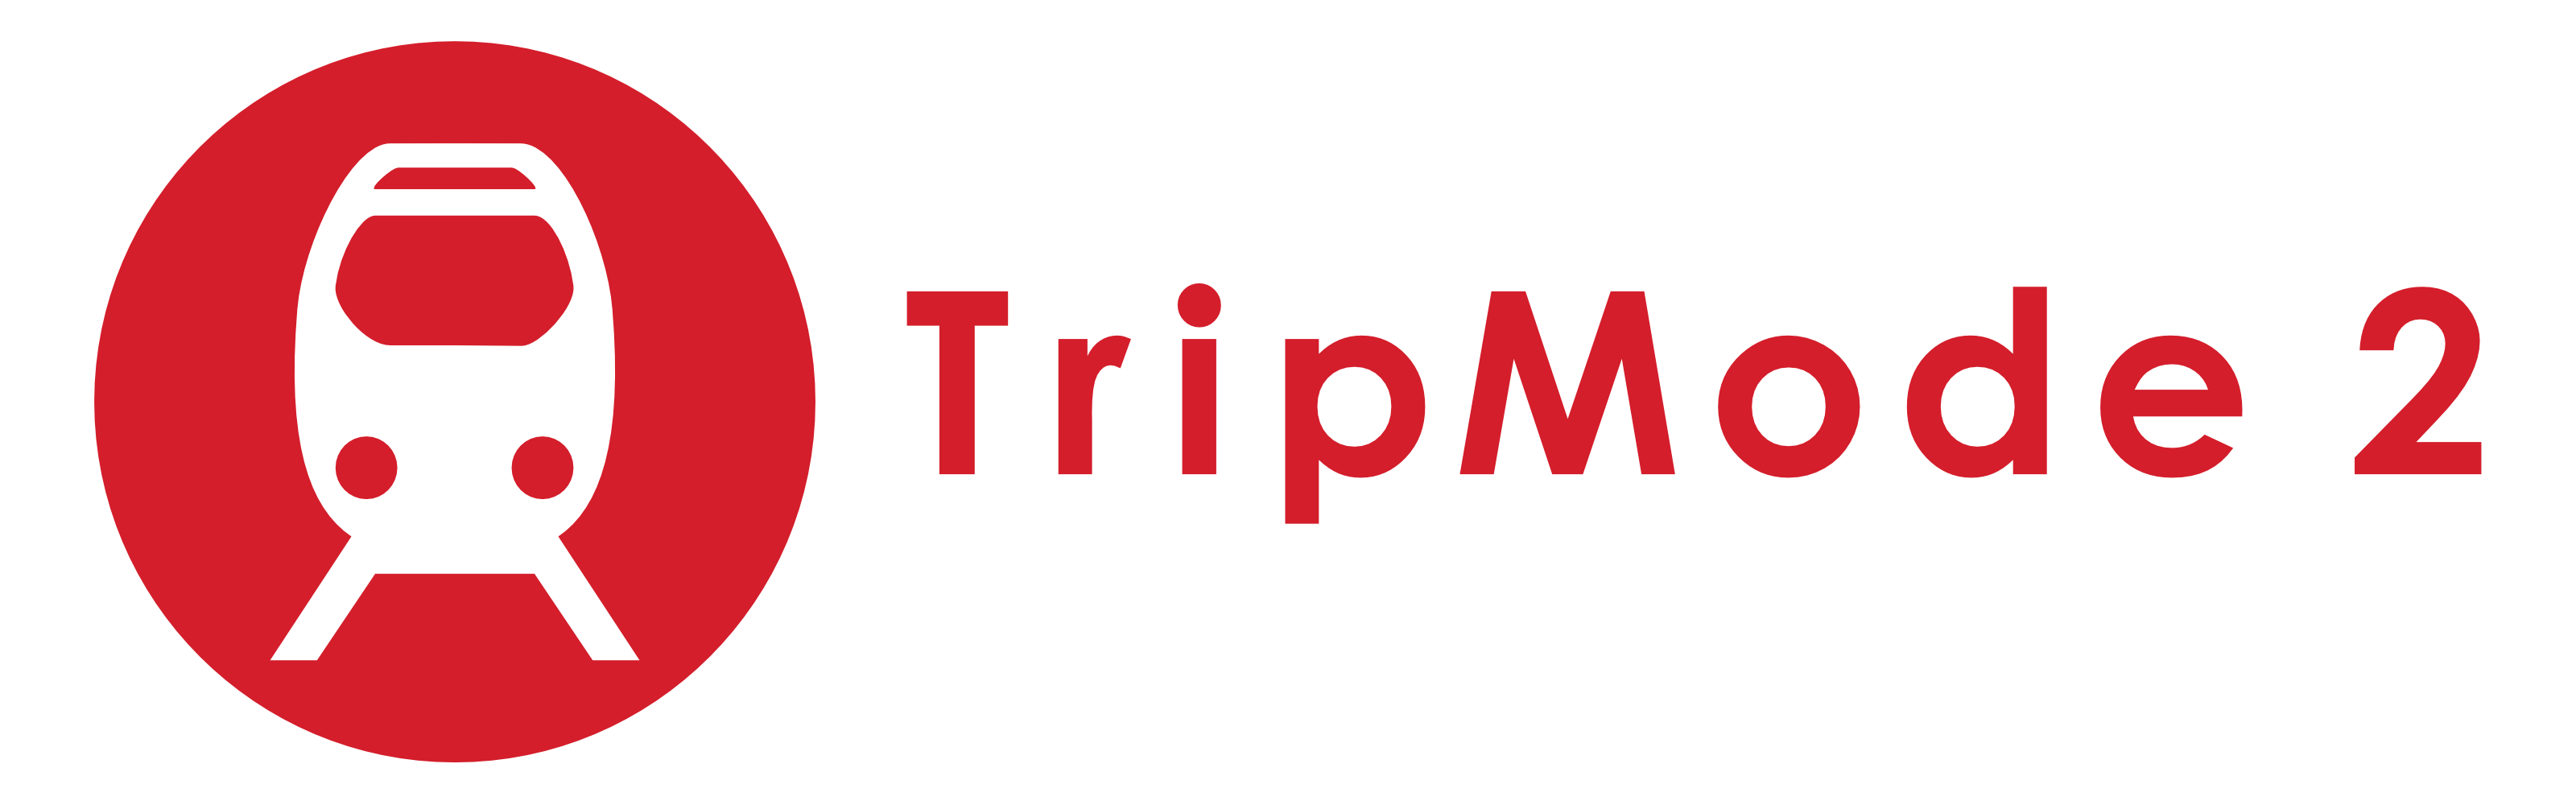 TripMode 1.0.3 Download